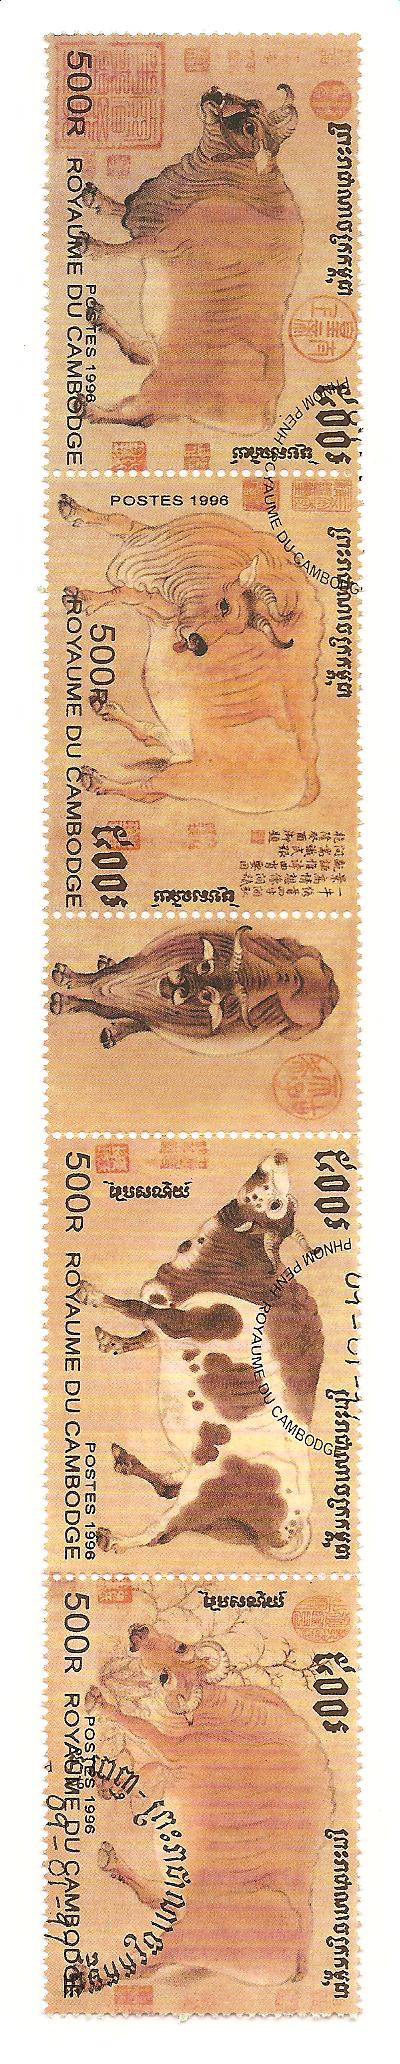 24749 - Cambogia - serie completa usata in striscia: Razze di bovini